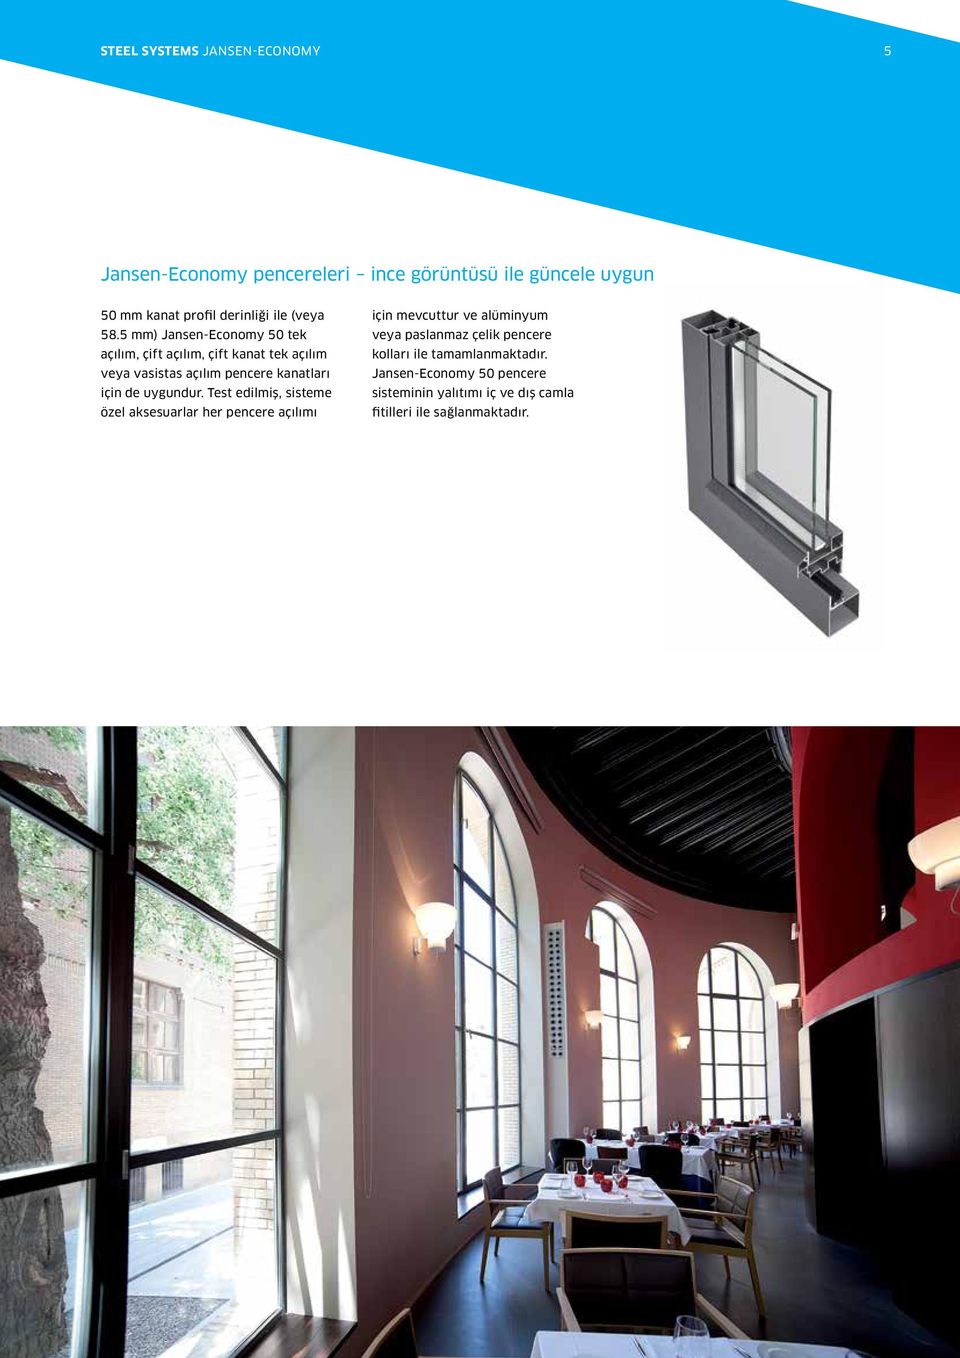 5 mm) Jansen-Economy tek açılım, çift açılım, çift kanat tek açılım veya vasistas açılım pencere kanatları için de